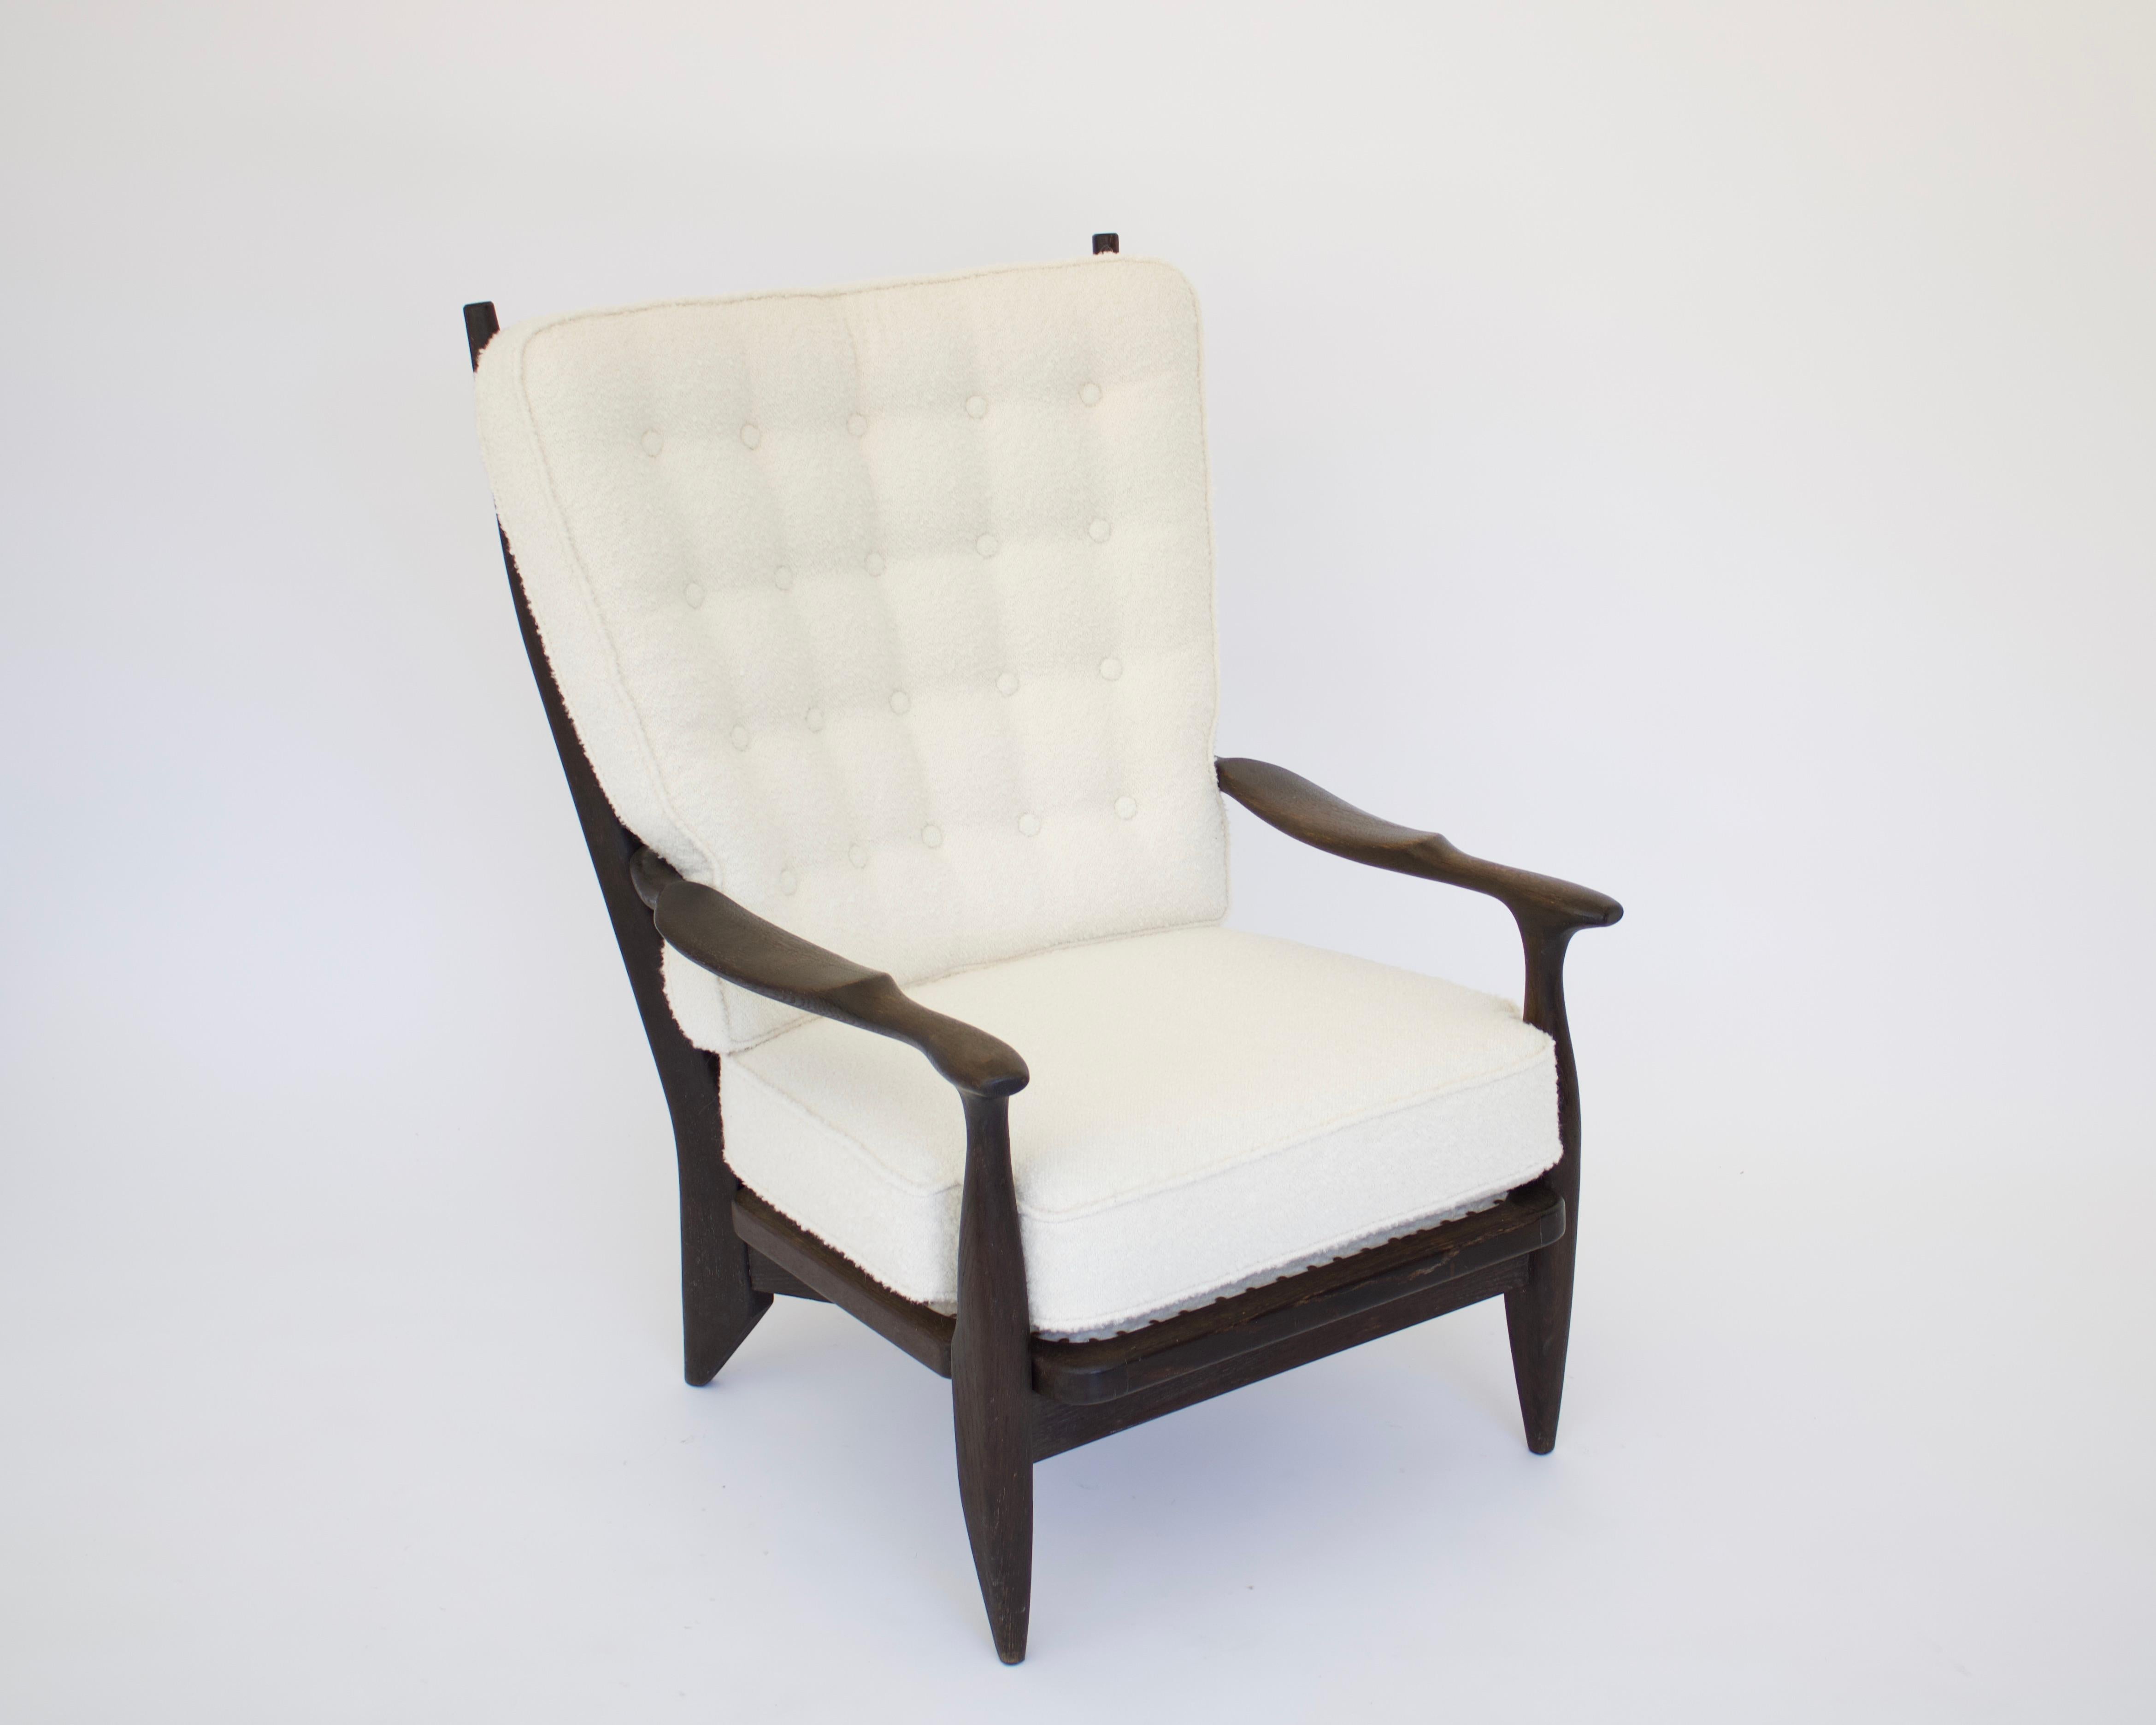 Chaise de salon modèle Edouard de Guillerme et Chambron, teintée brun chocolat à noir. La chaise a toujours été de cette couleur tachée. Elle a été retapissée, de nouveaux coussins et de nouvelles sangles sous le siège. 
Le bois a été nettoyé et